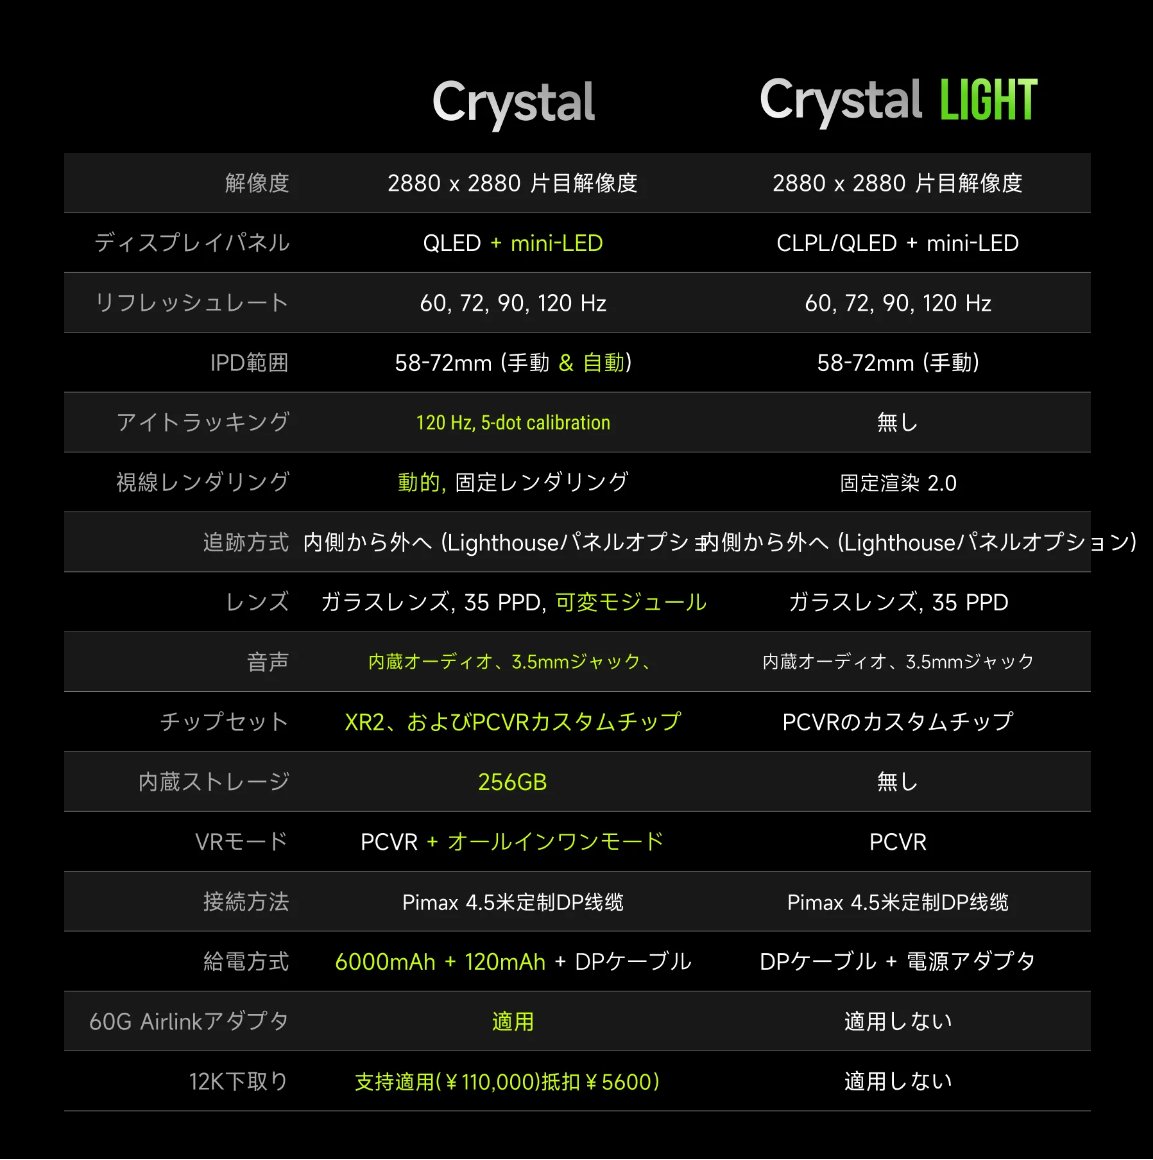 Pimax Crystal Light（w/ LD）のLighthouse特別版が税別14.4万円と現実的な価格。インサイドアウトトラッキングのコントローラーが省かれ標準でLighthouseプレートが付属なので、Bigscreen BeyondやValve Index HMDのみと同等の内容。コントローラーの有無を除くと200ドル＝¥34,980が割り引かれてる。